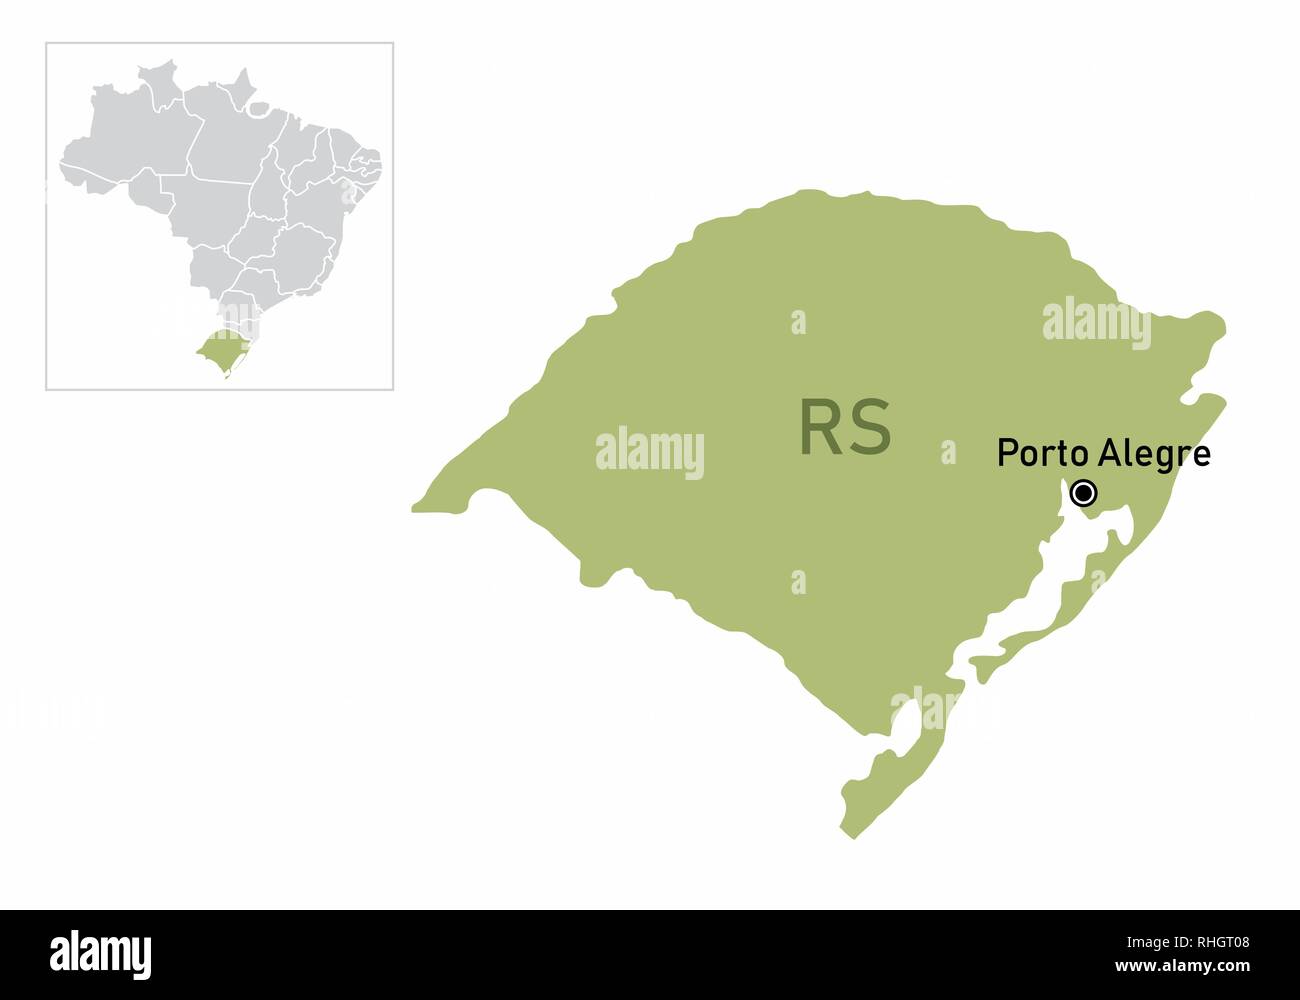 Ilustracion Del Estado De Rio Grande Do Sul Y Su Ubicacion En El Mapa De Brasil Imagen Vector De Stock Alamy